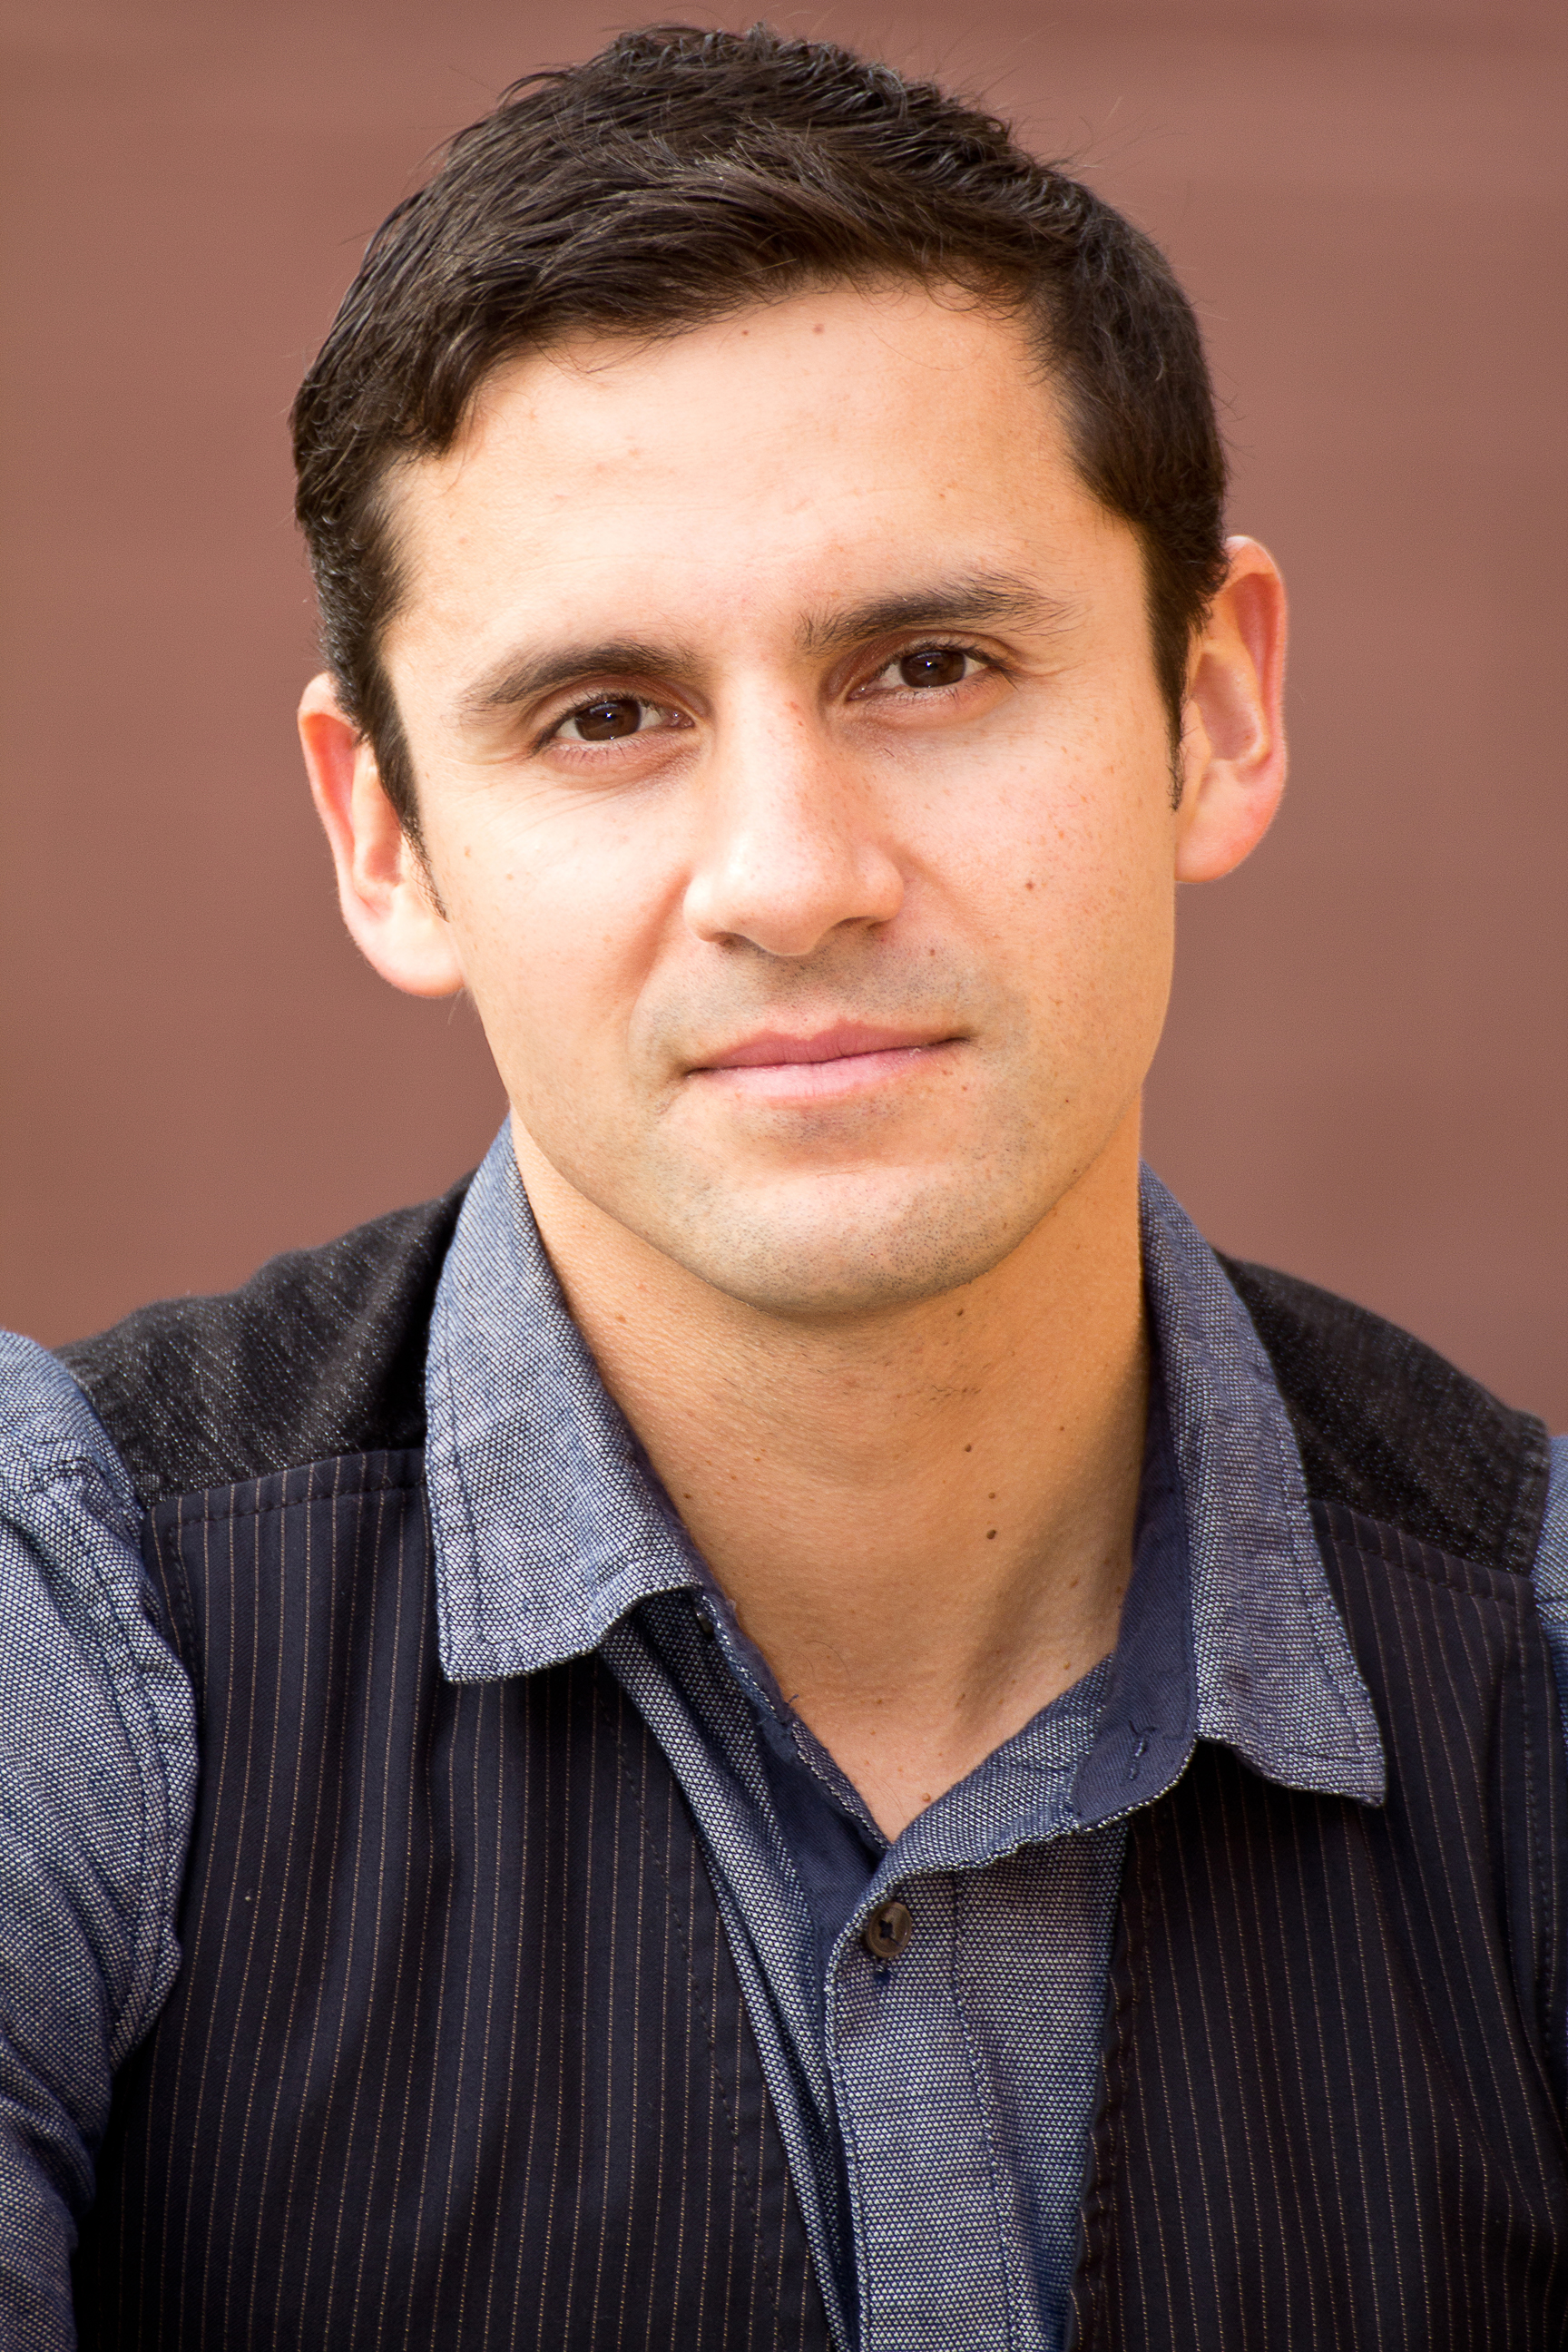 Alberto Ocampo Bilingual Actor, los Angeles, CA #actorslife